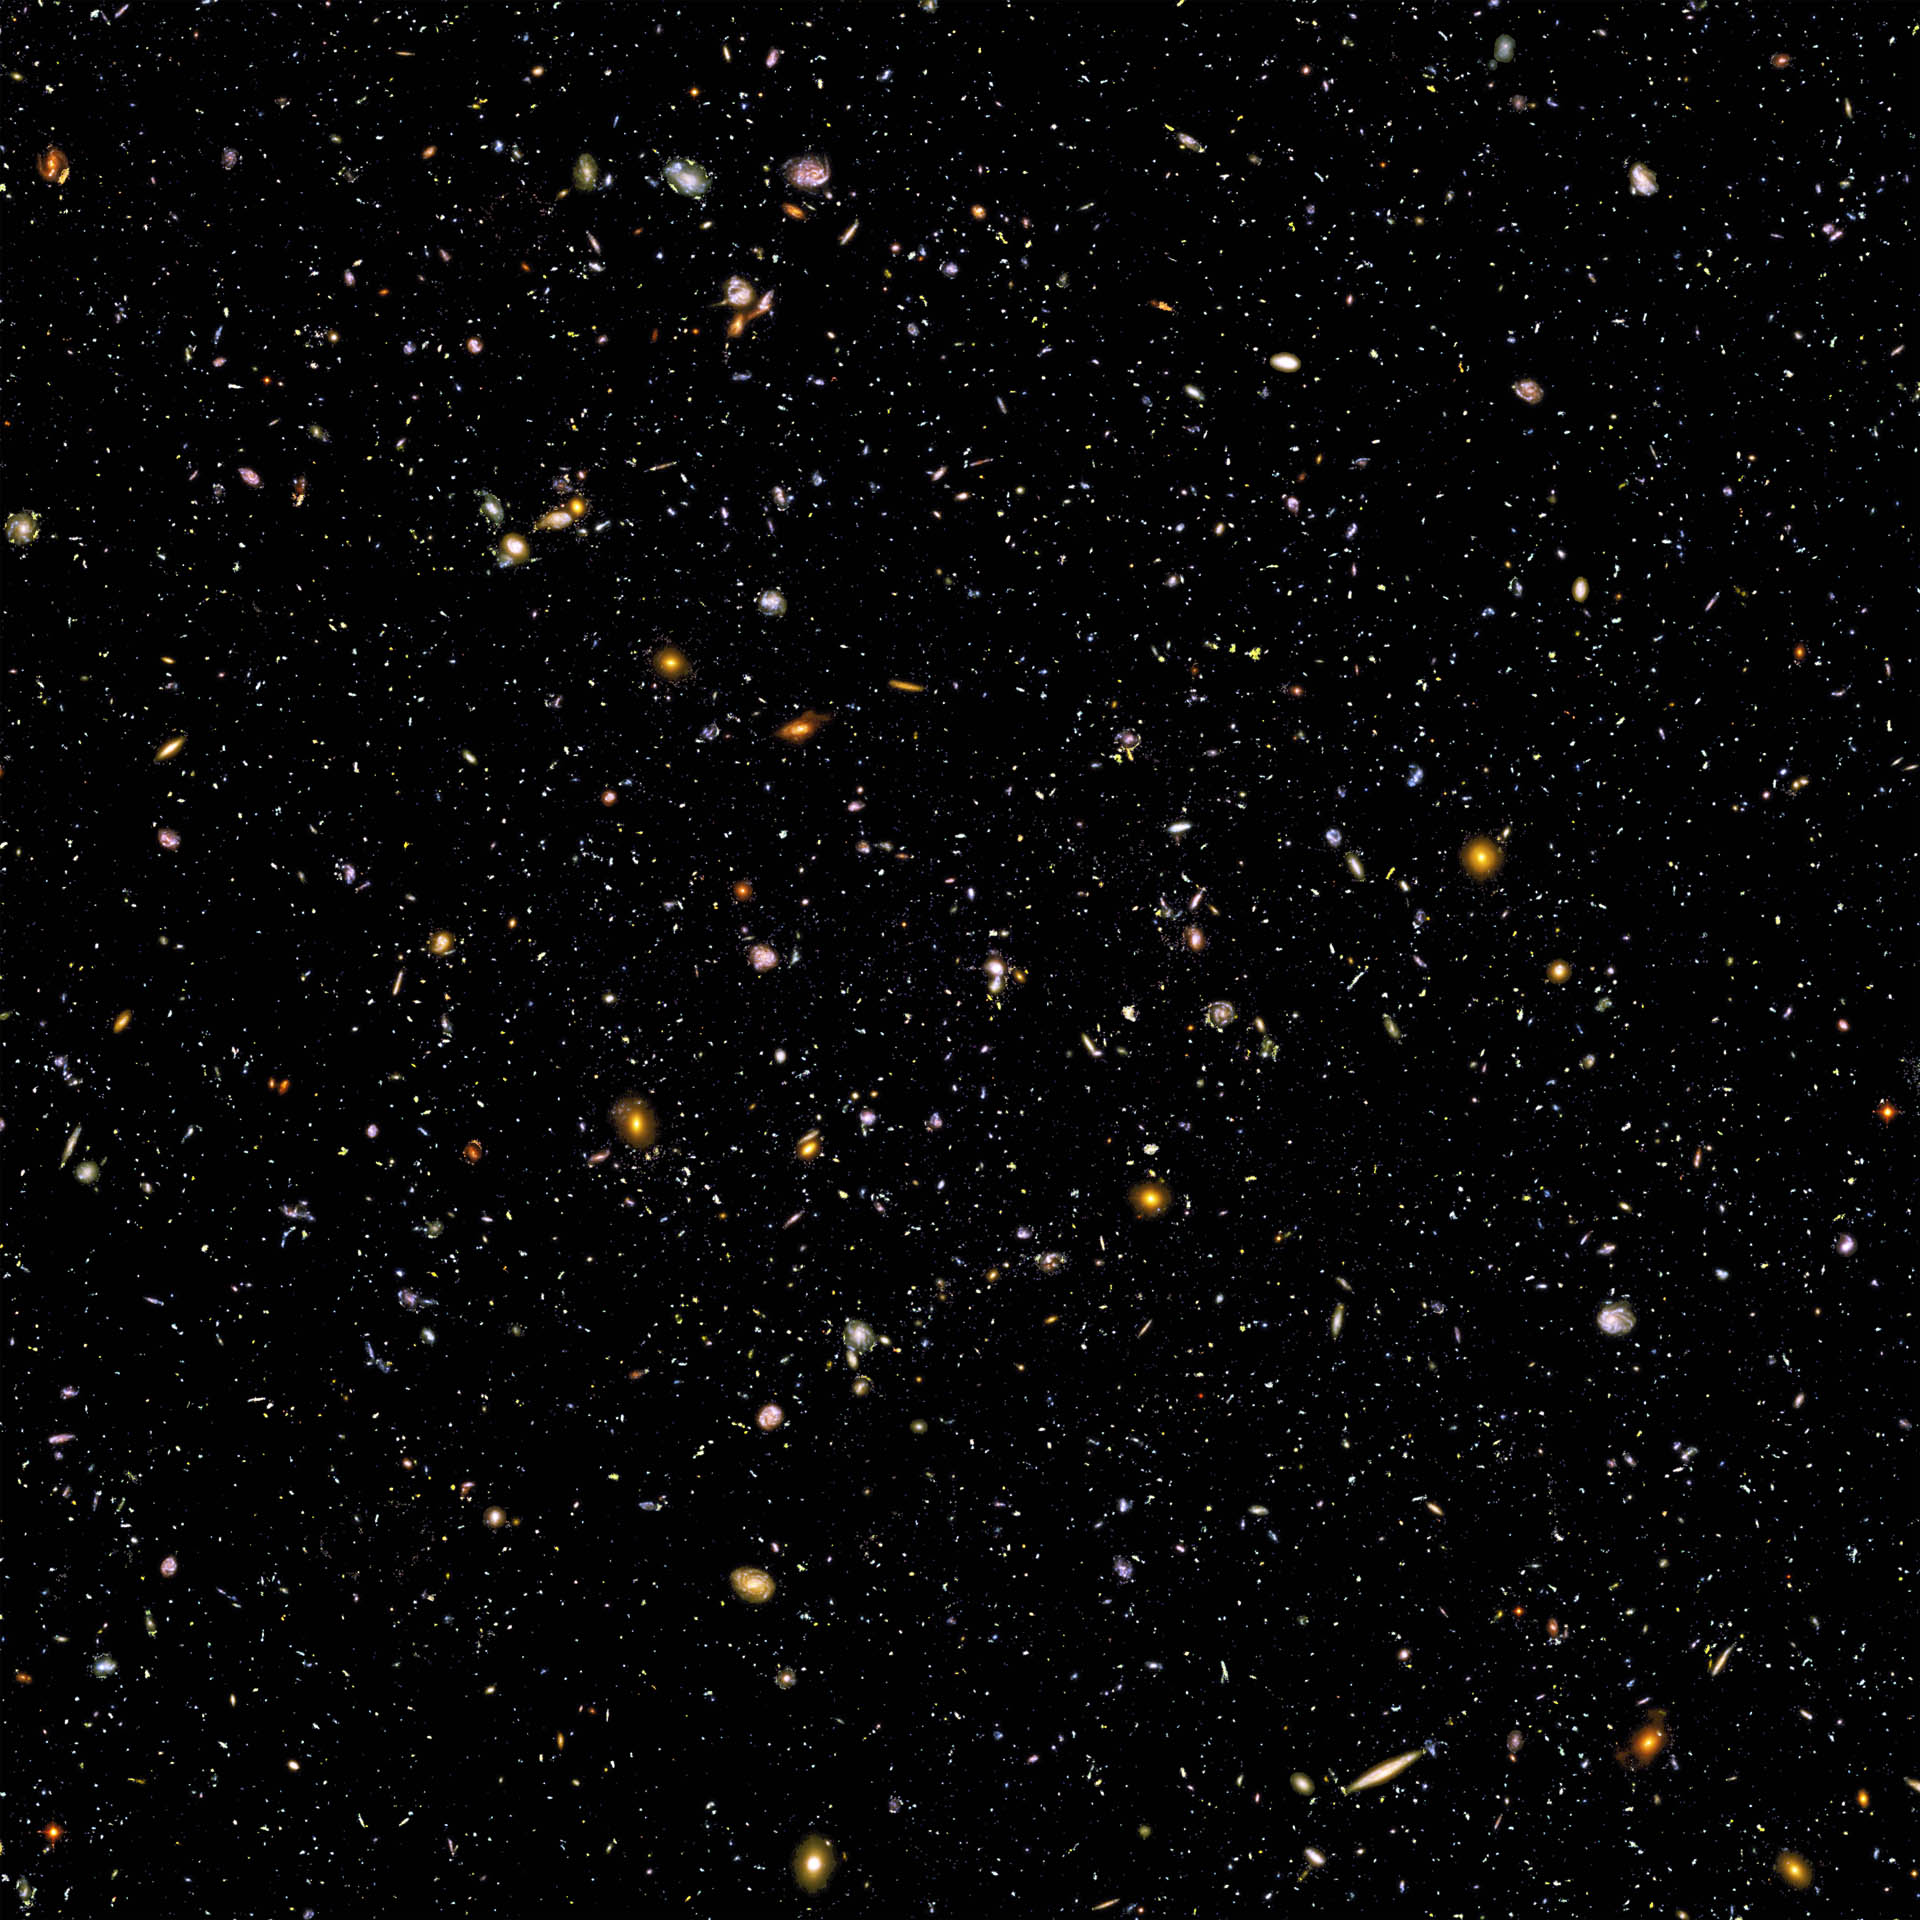 Hubble Ultra Deep Field en couches3_1920.jpg (Hubble Ultra Deep Field)